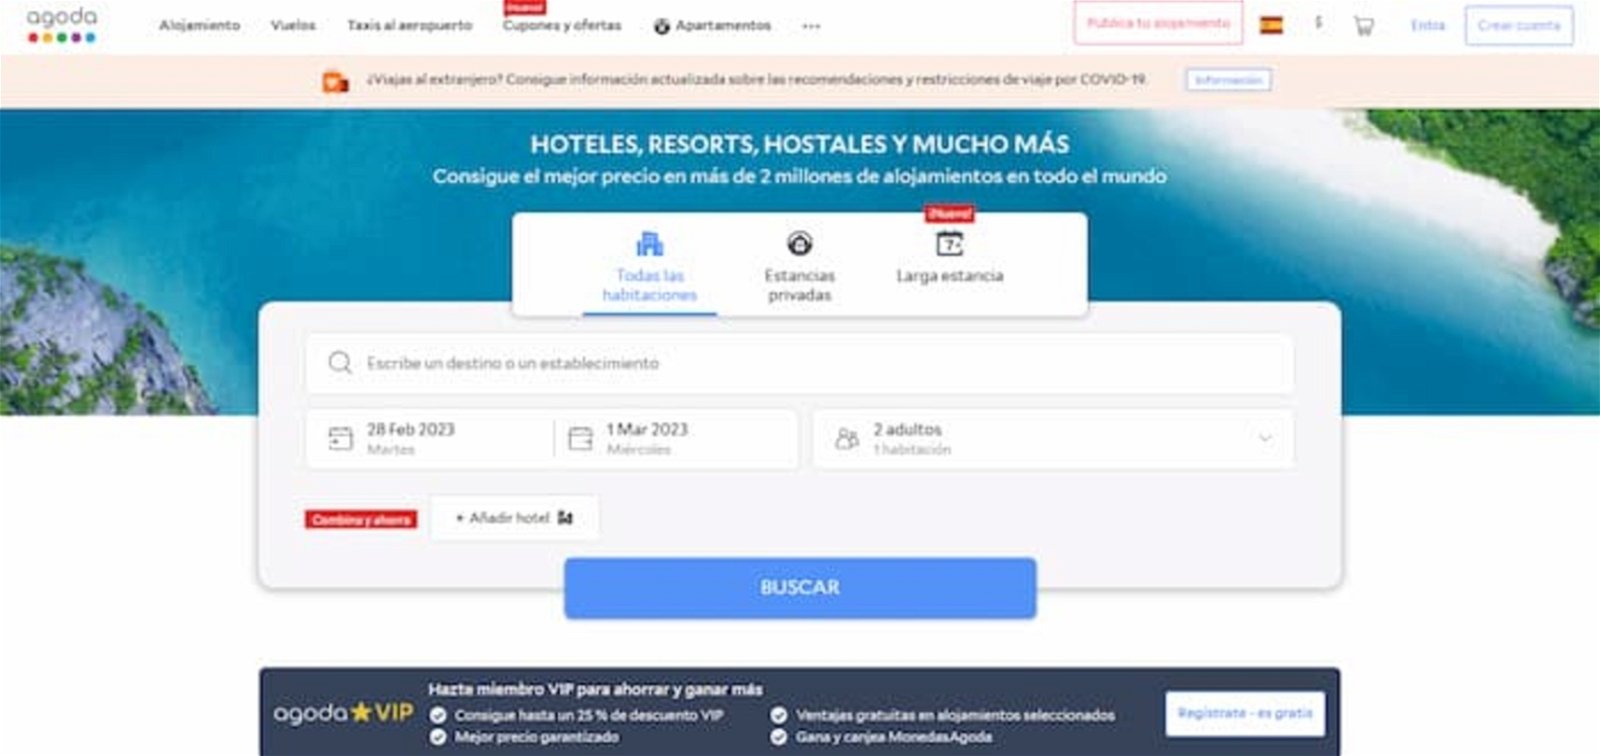 La plataforma de Agoda te ofrece un montón de beneficios al momento de reservar un hotel, incluyendo un sistema de recompensa por fidelización